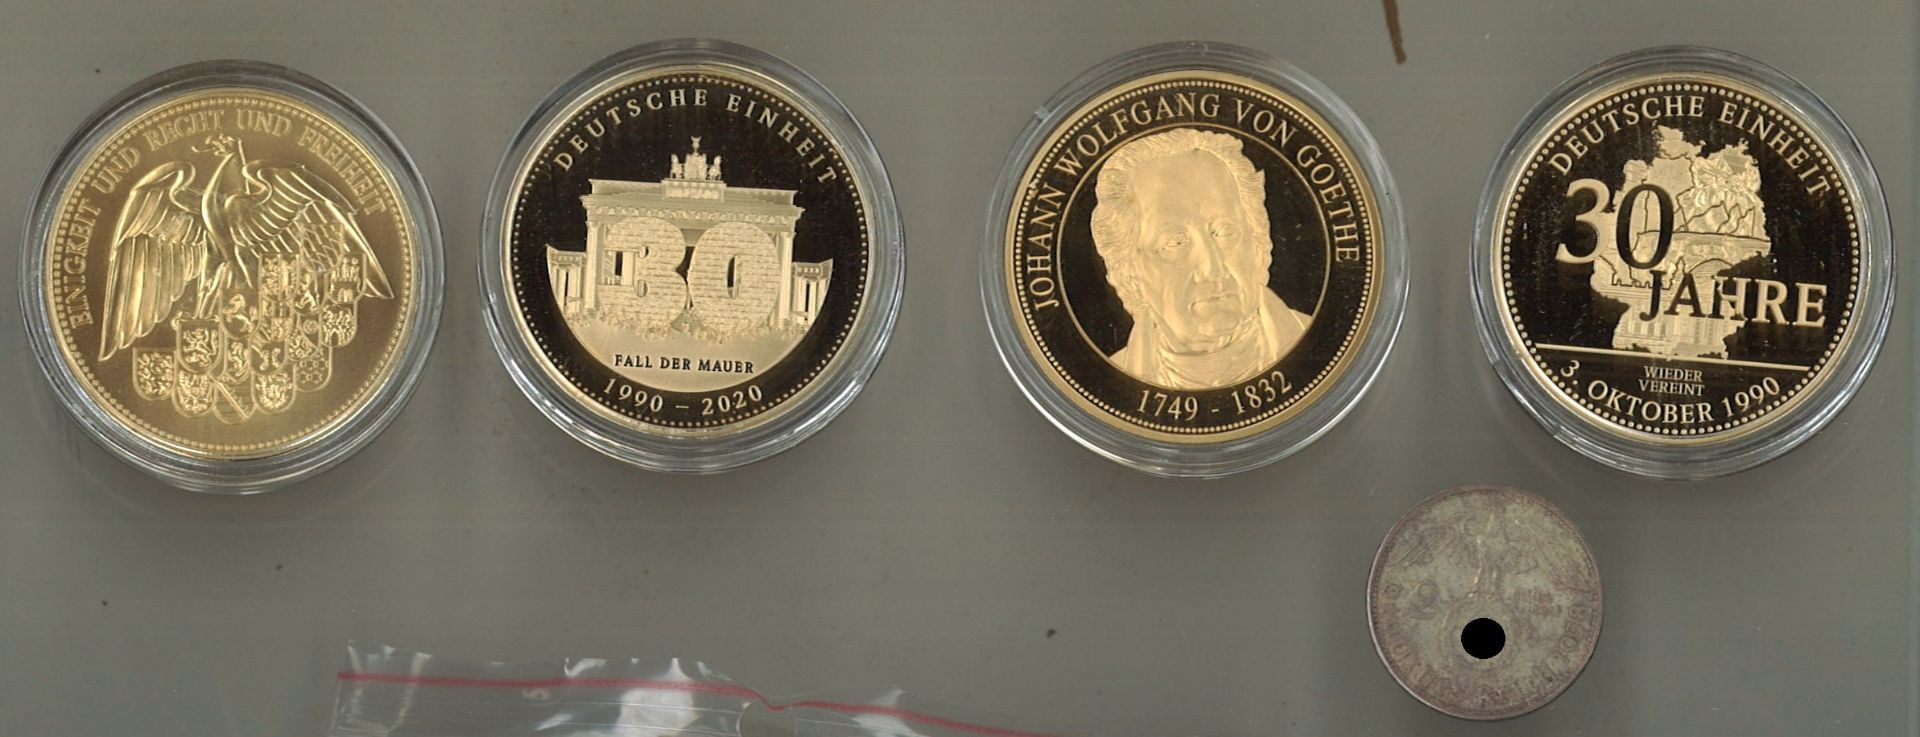 4 vergoldetete Medaillen Deutschland, dabei 2x 30 Jahre Deutsche Einheit sowie 2 Mark Silberstück - Bild 2 aus 2